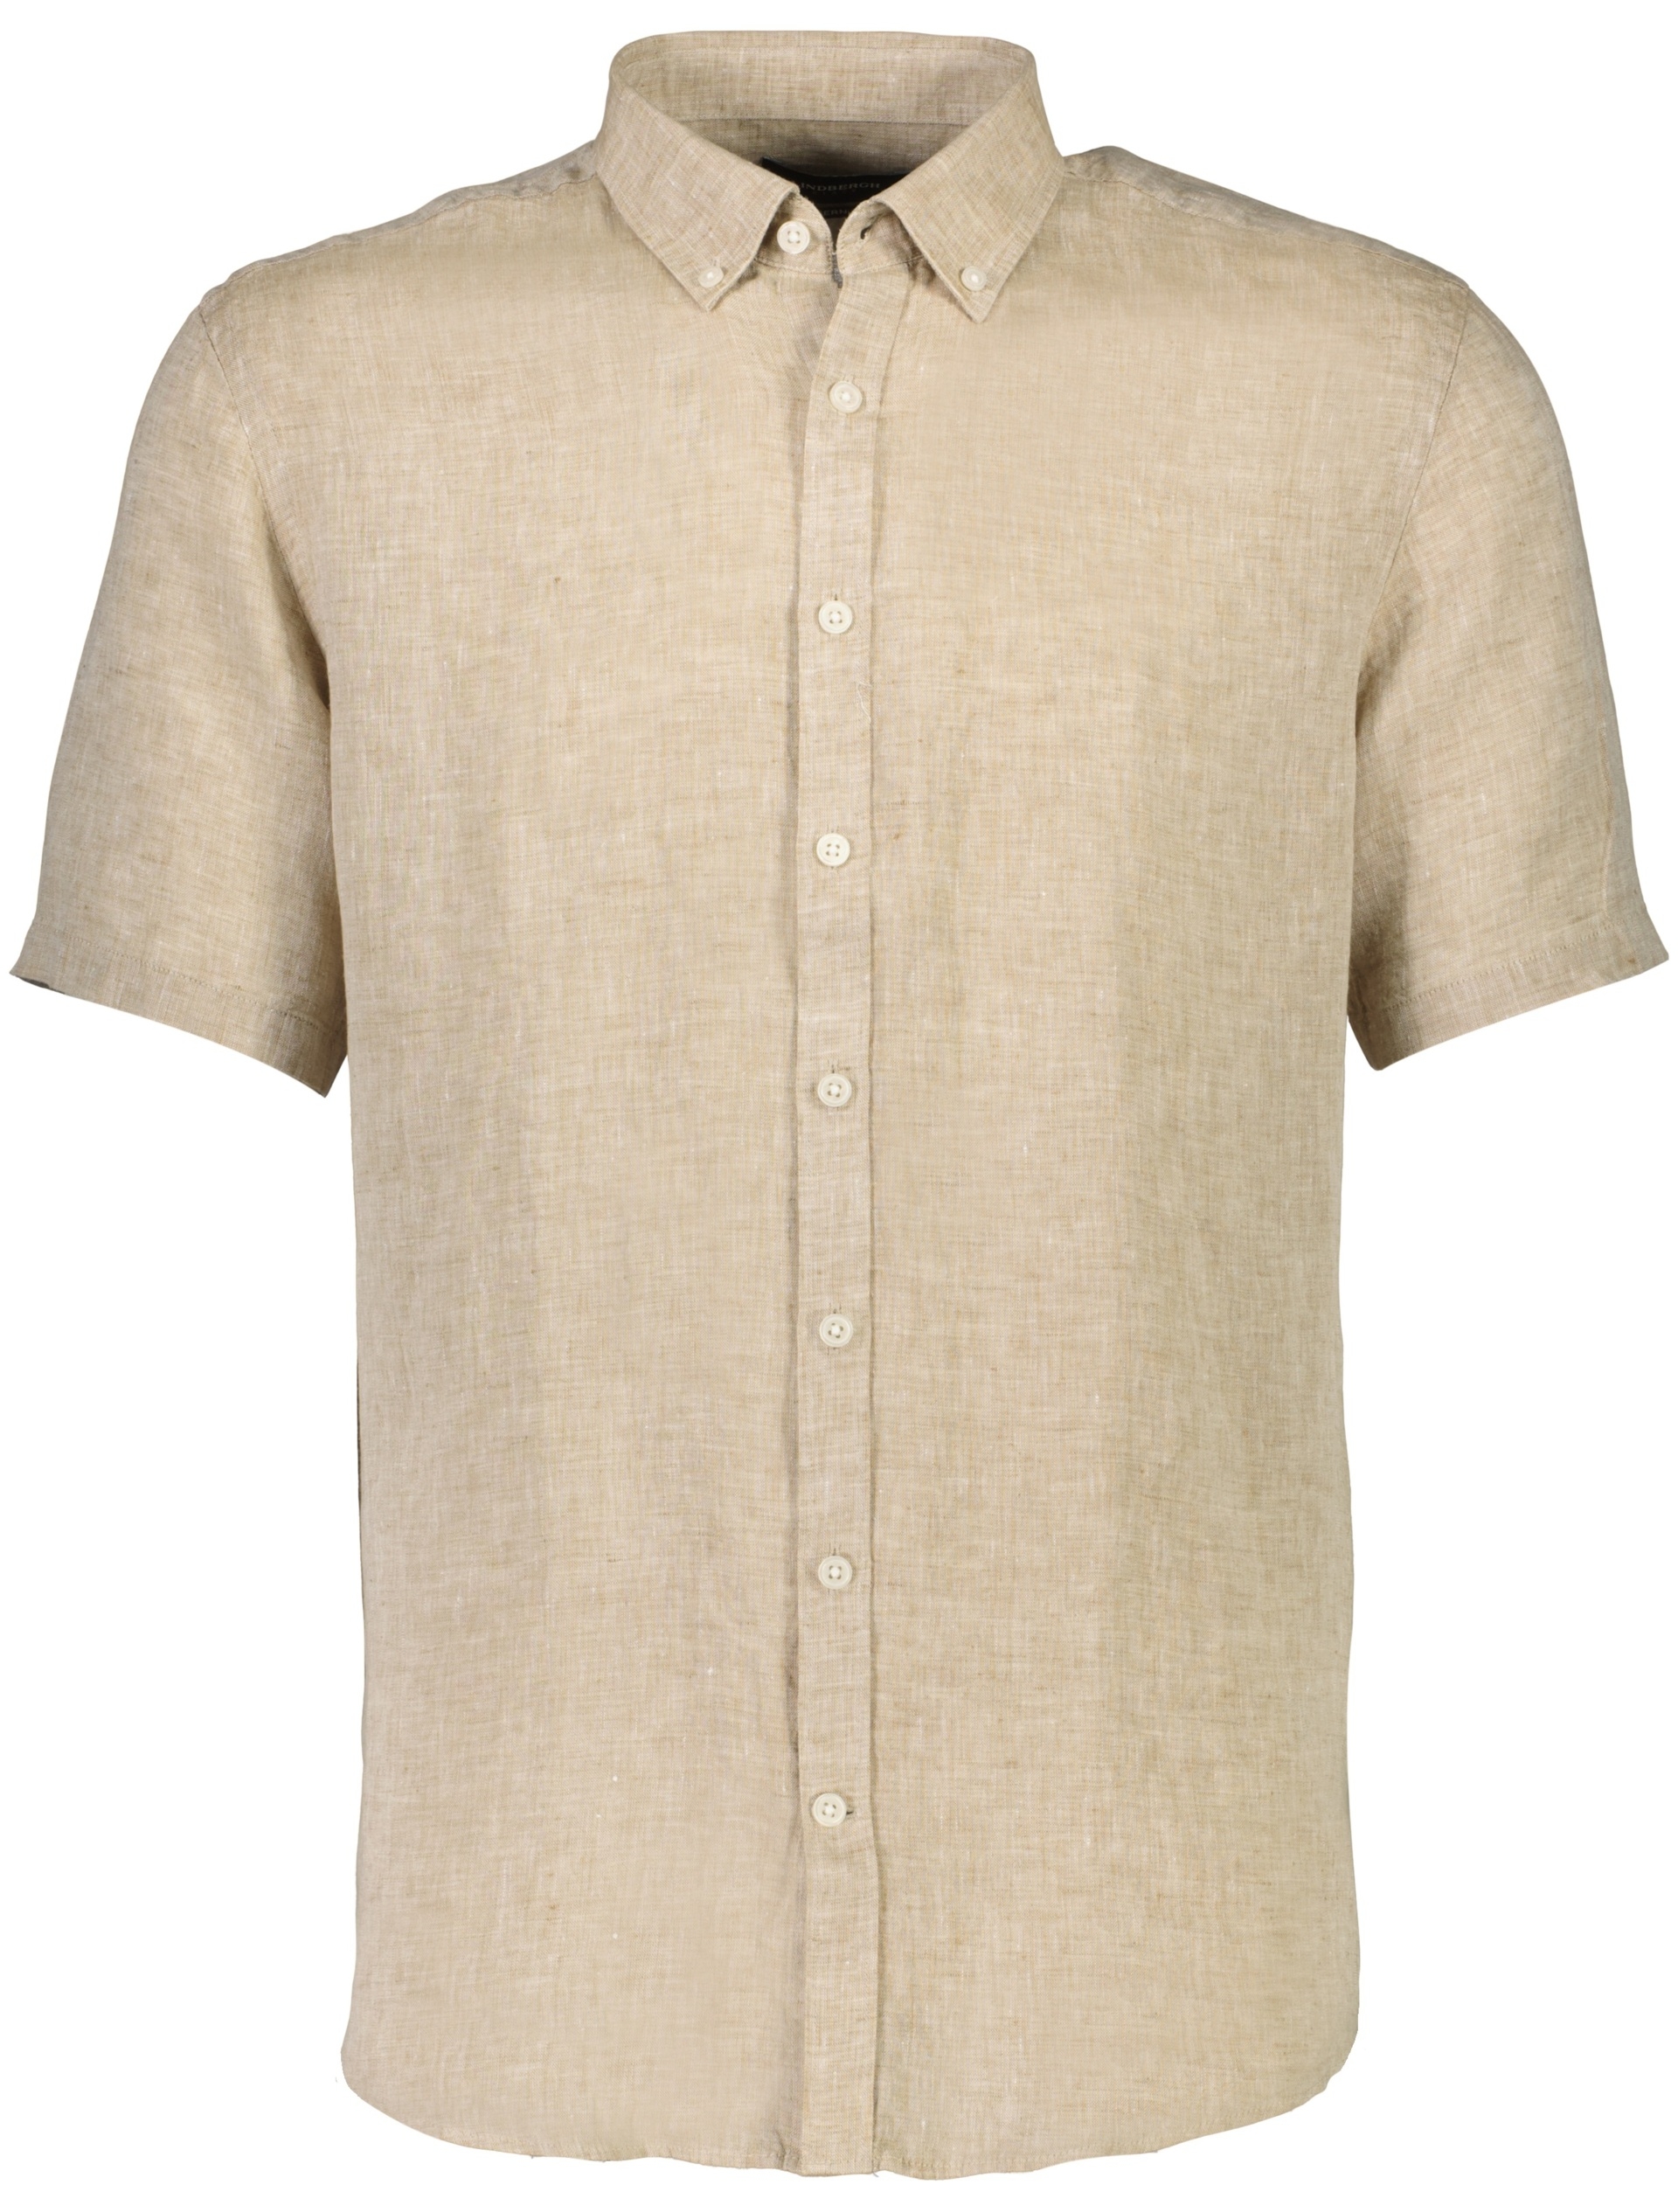 Lindbergh Linen shirt sand / sand mel